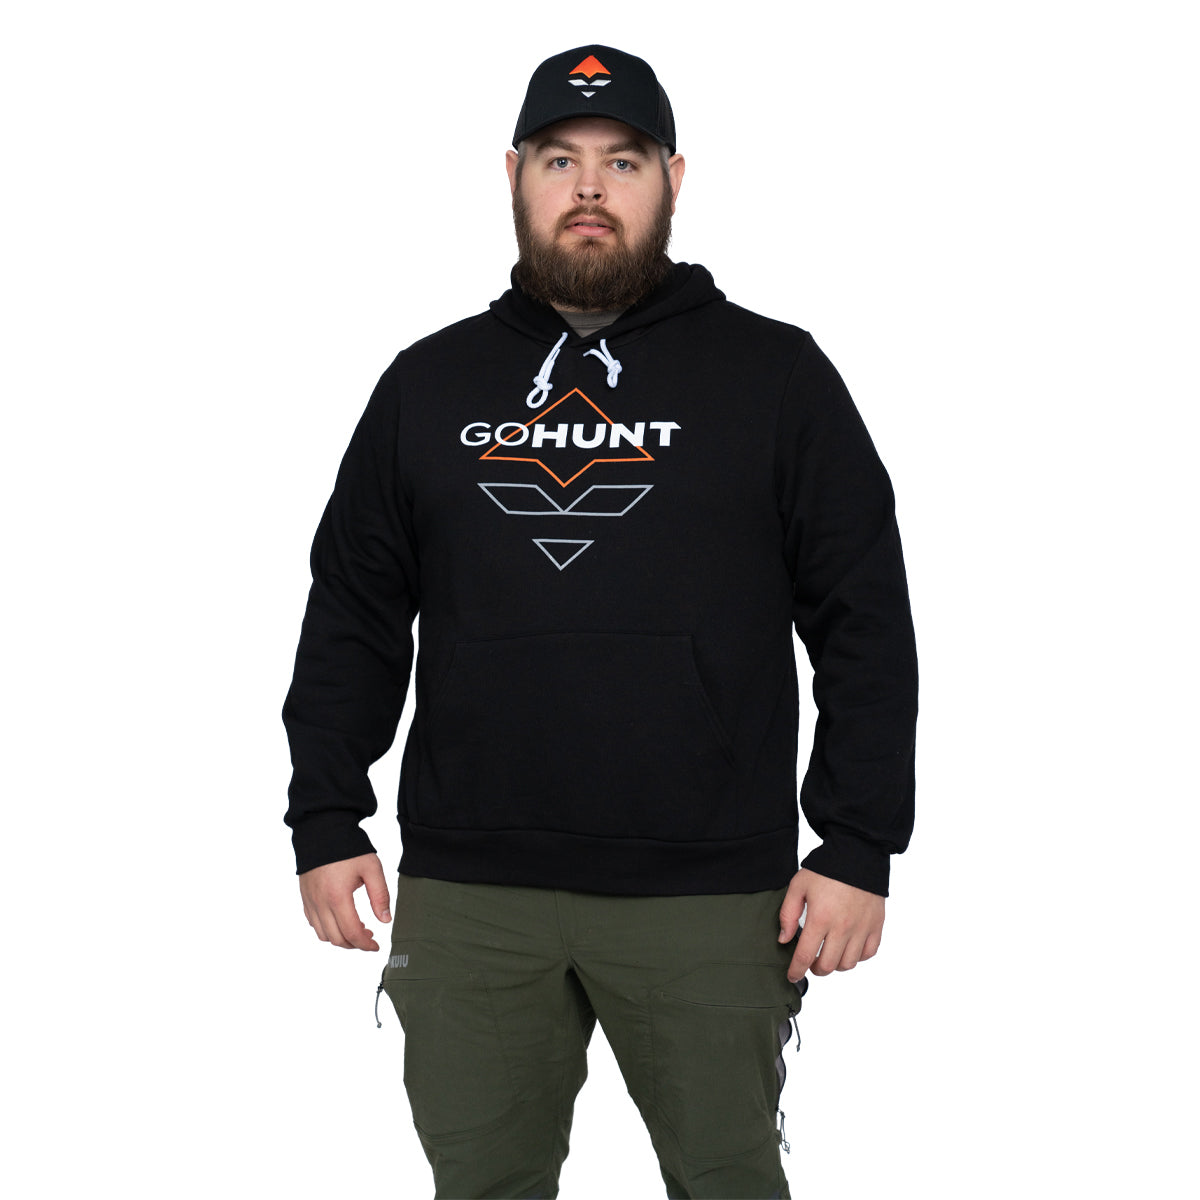 GOHUNT Logo Hoodie in Black by GOHUNT | GOHUNT - GOHUNT Shop